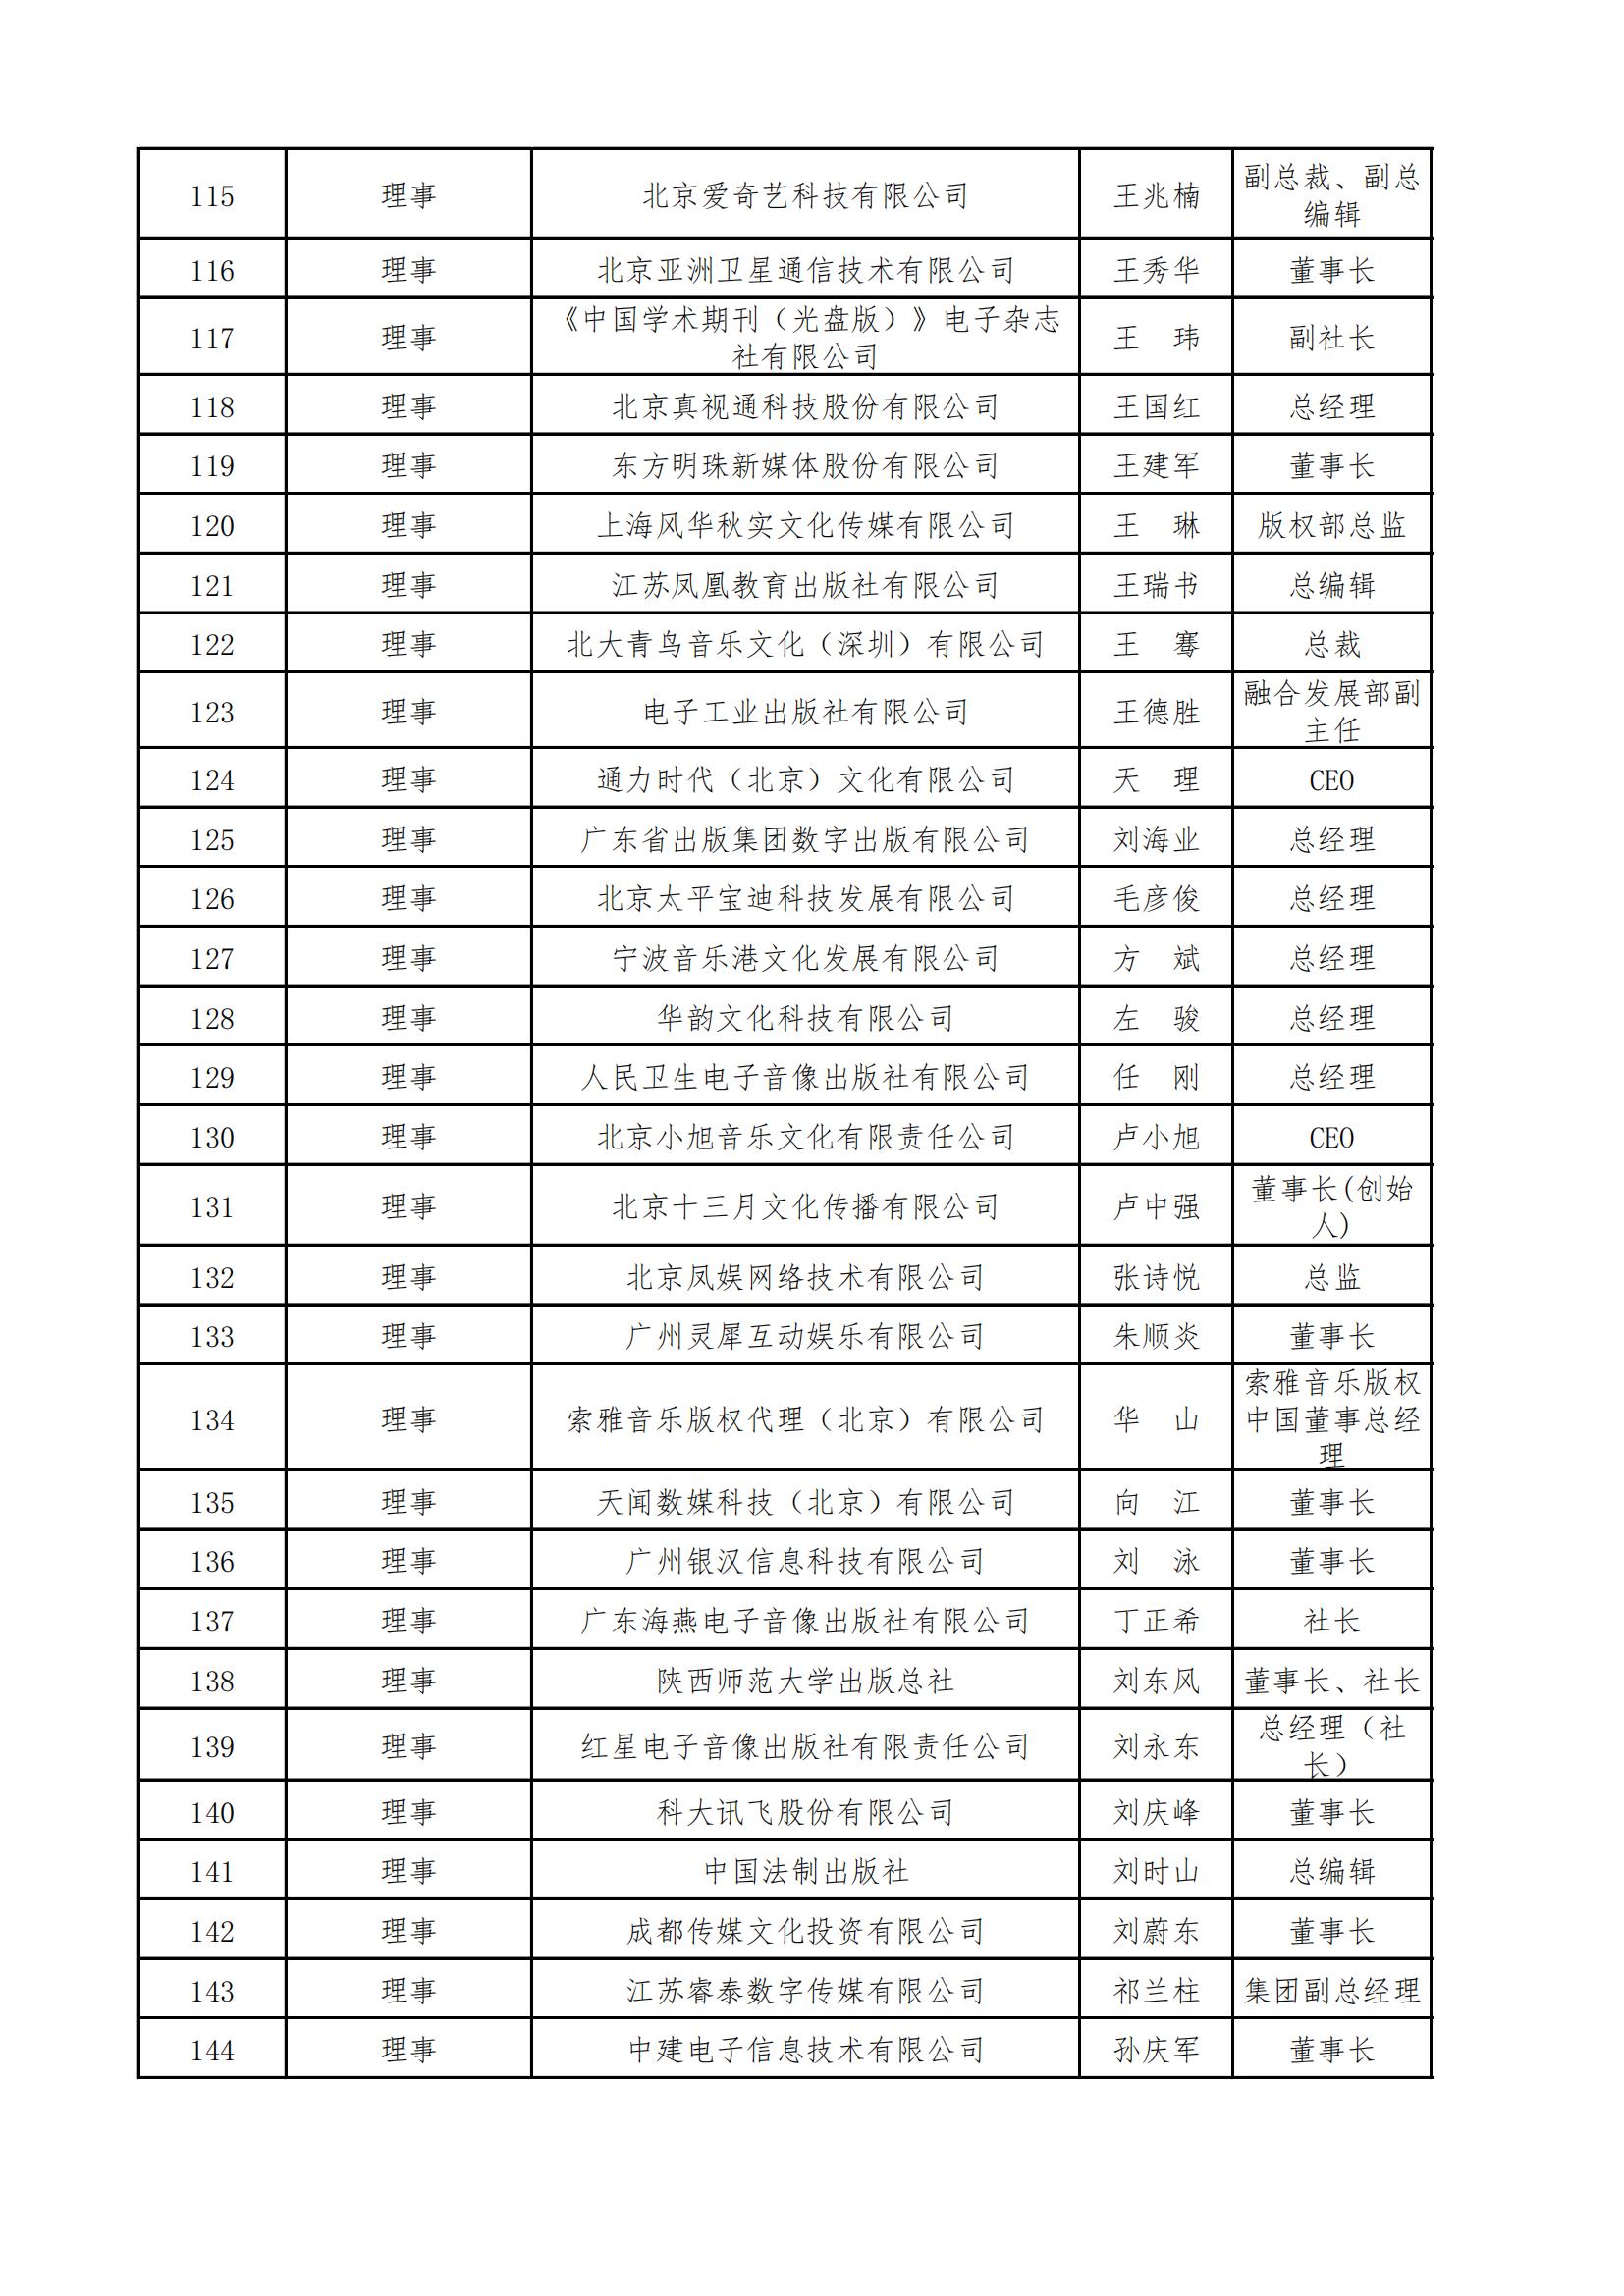 中國音像與數字出版協會第五屆理事會名錄_04.jpg